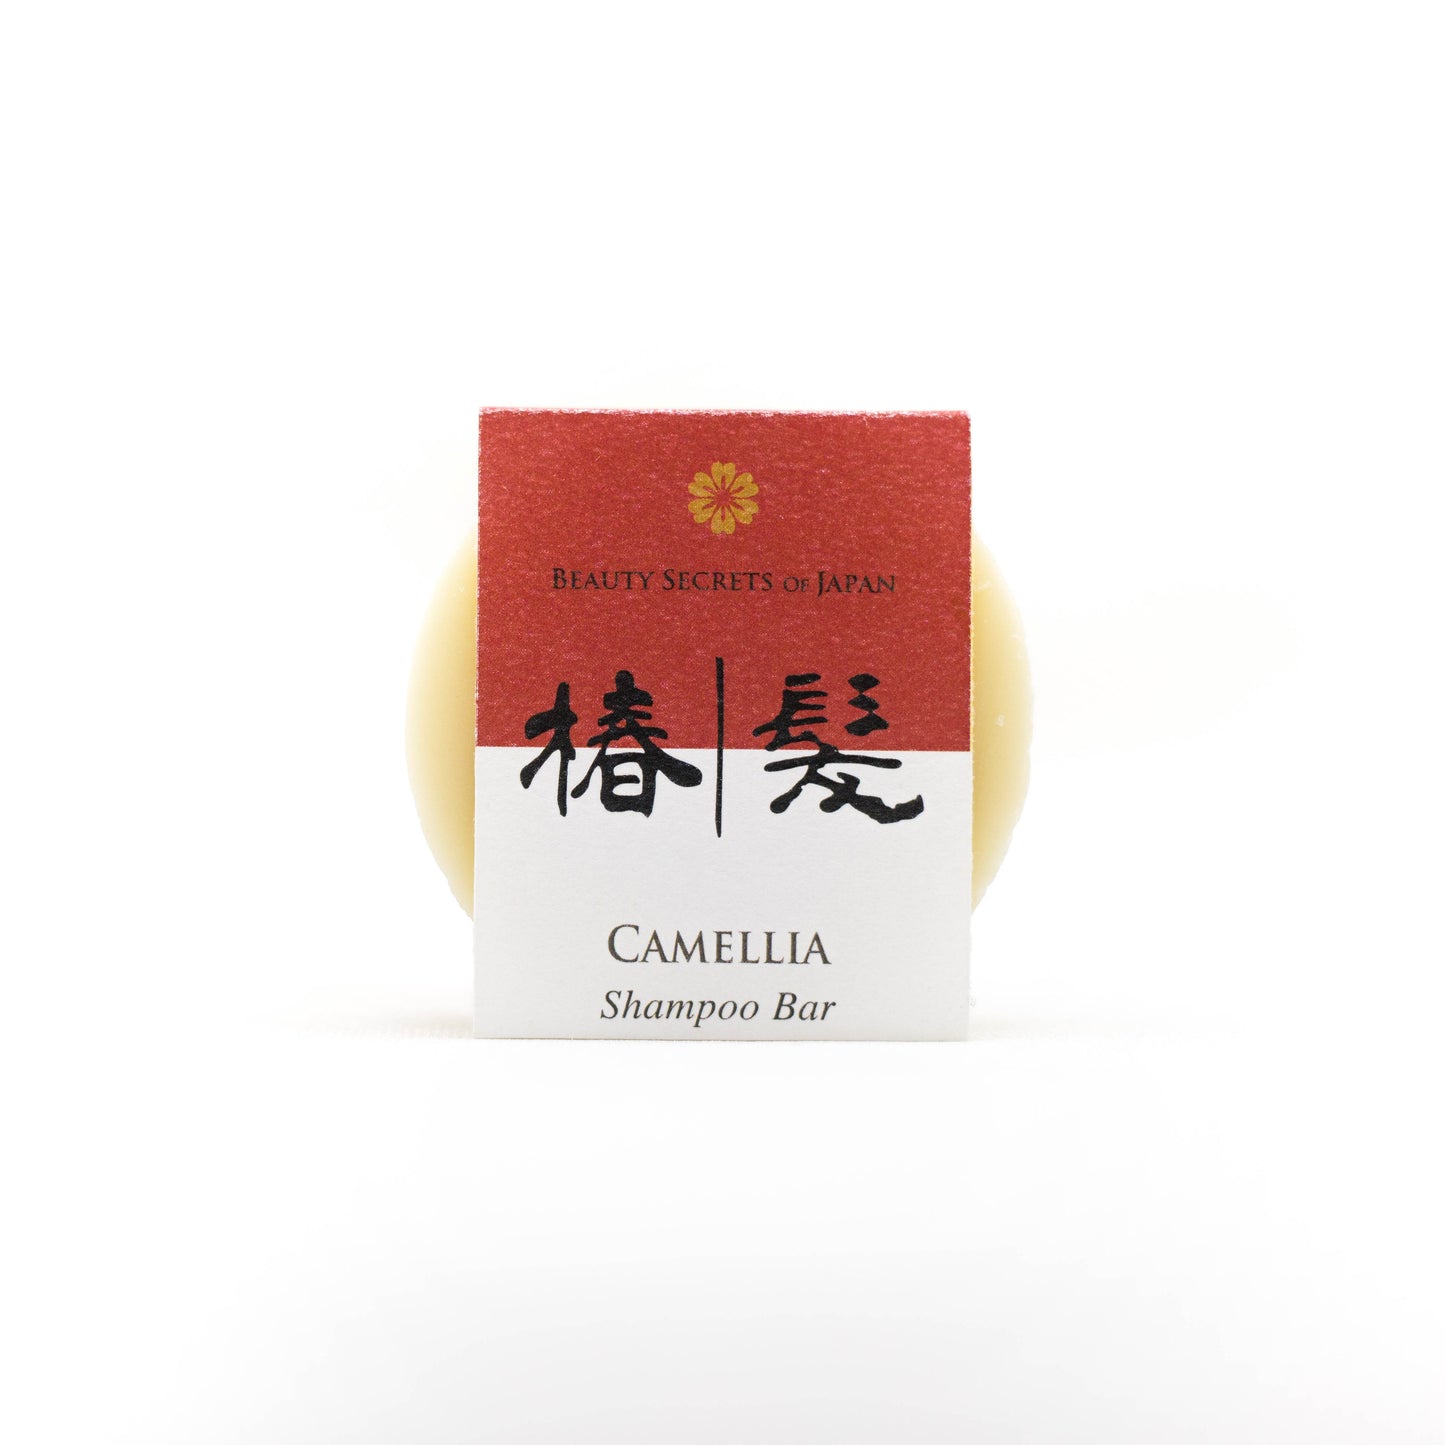 Camellia shampoo bar